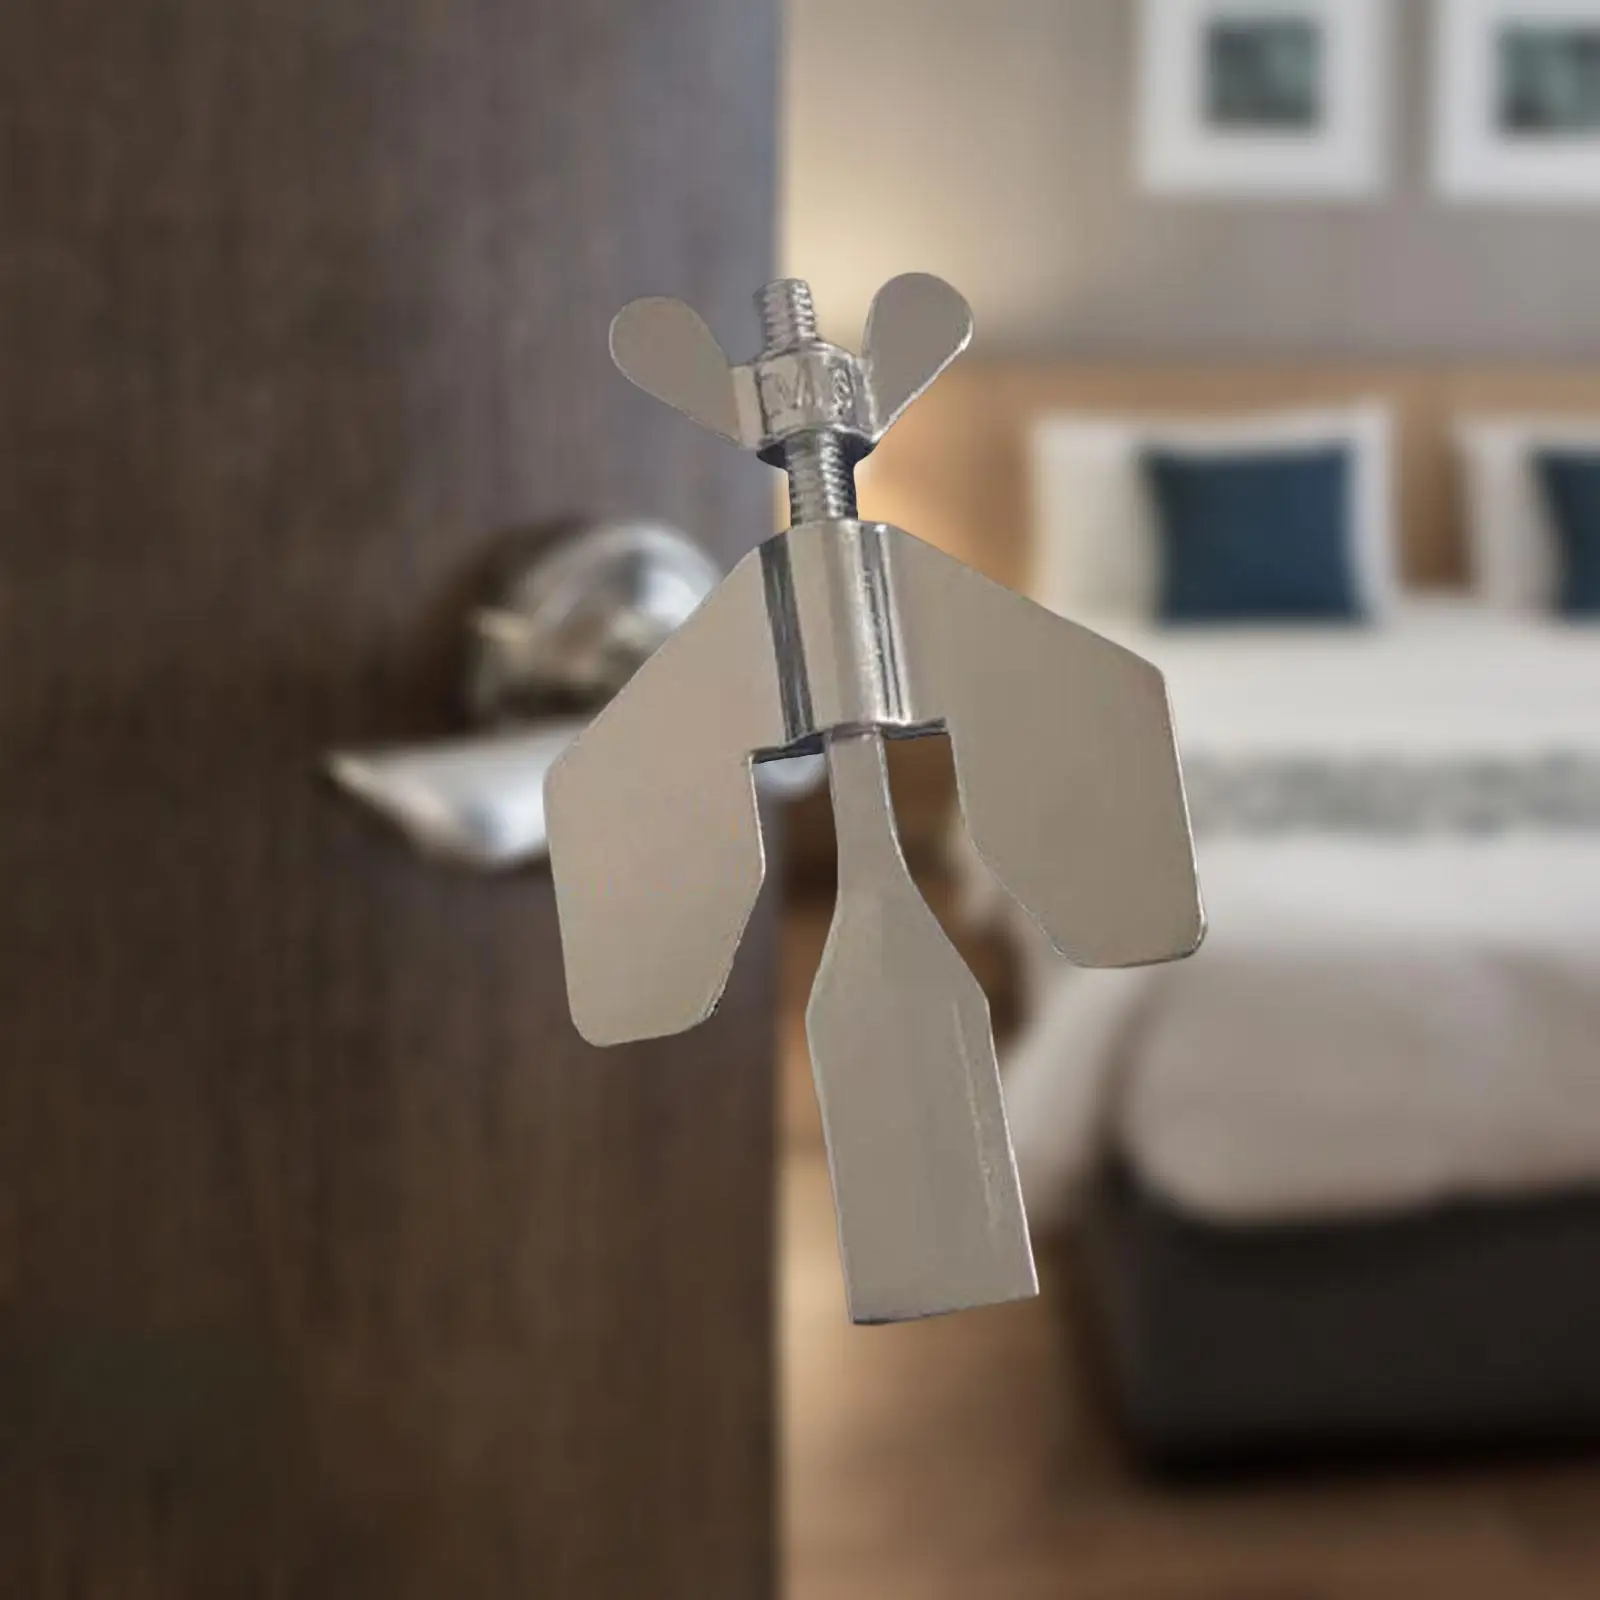 Travel Door Lock Alloy Security Premium Durable Safety Locks Portable Door Lock for Travelers Bedroom Dorm Apartment Hotel Rooms